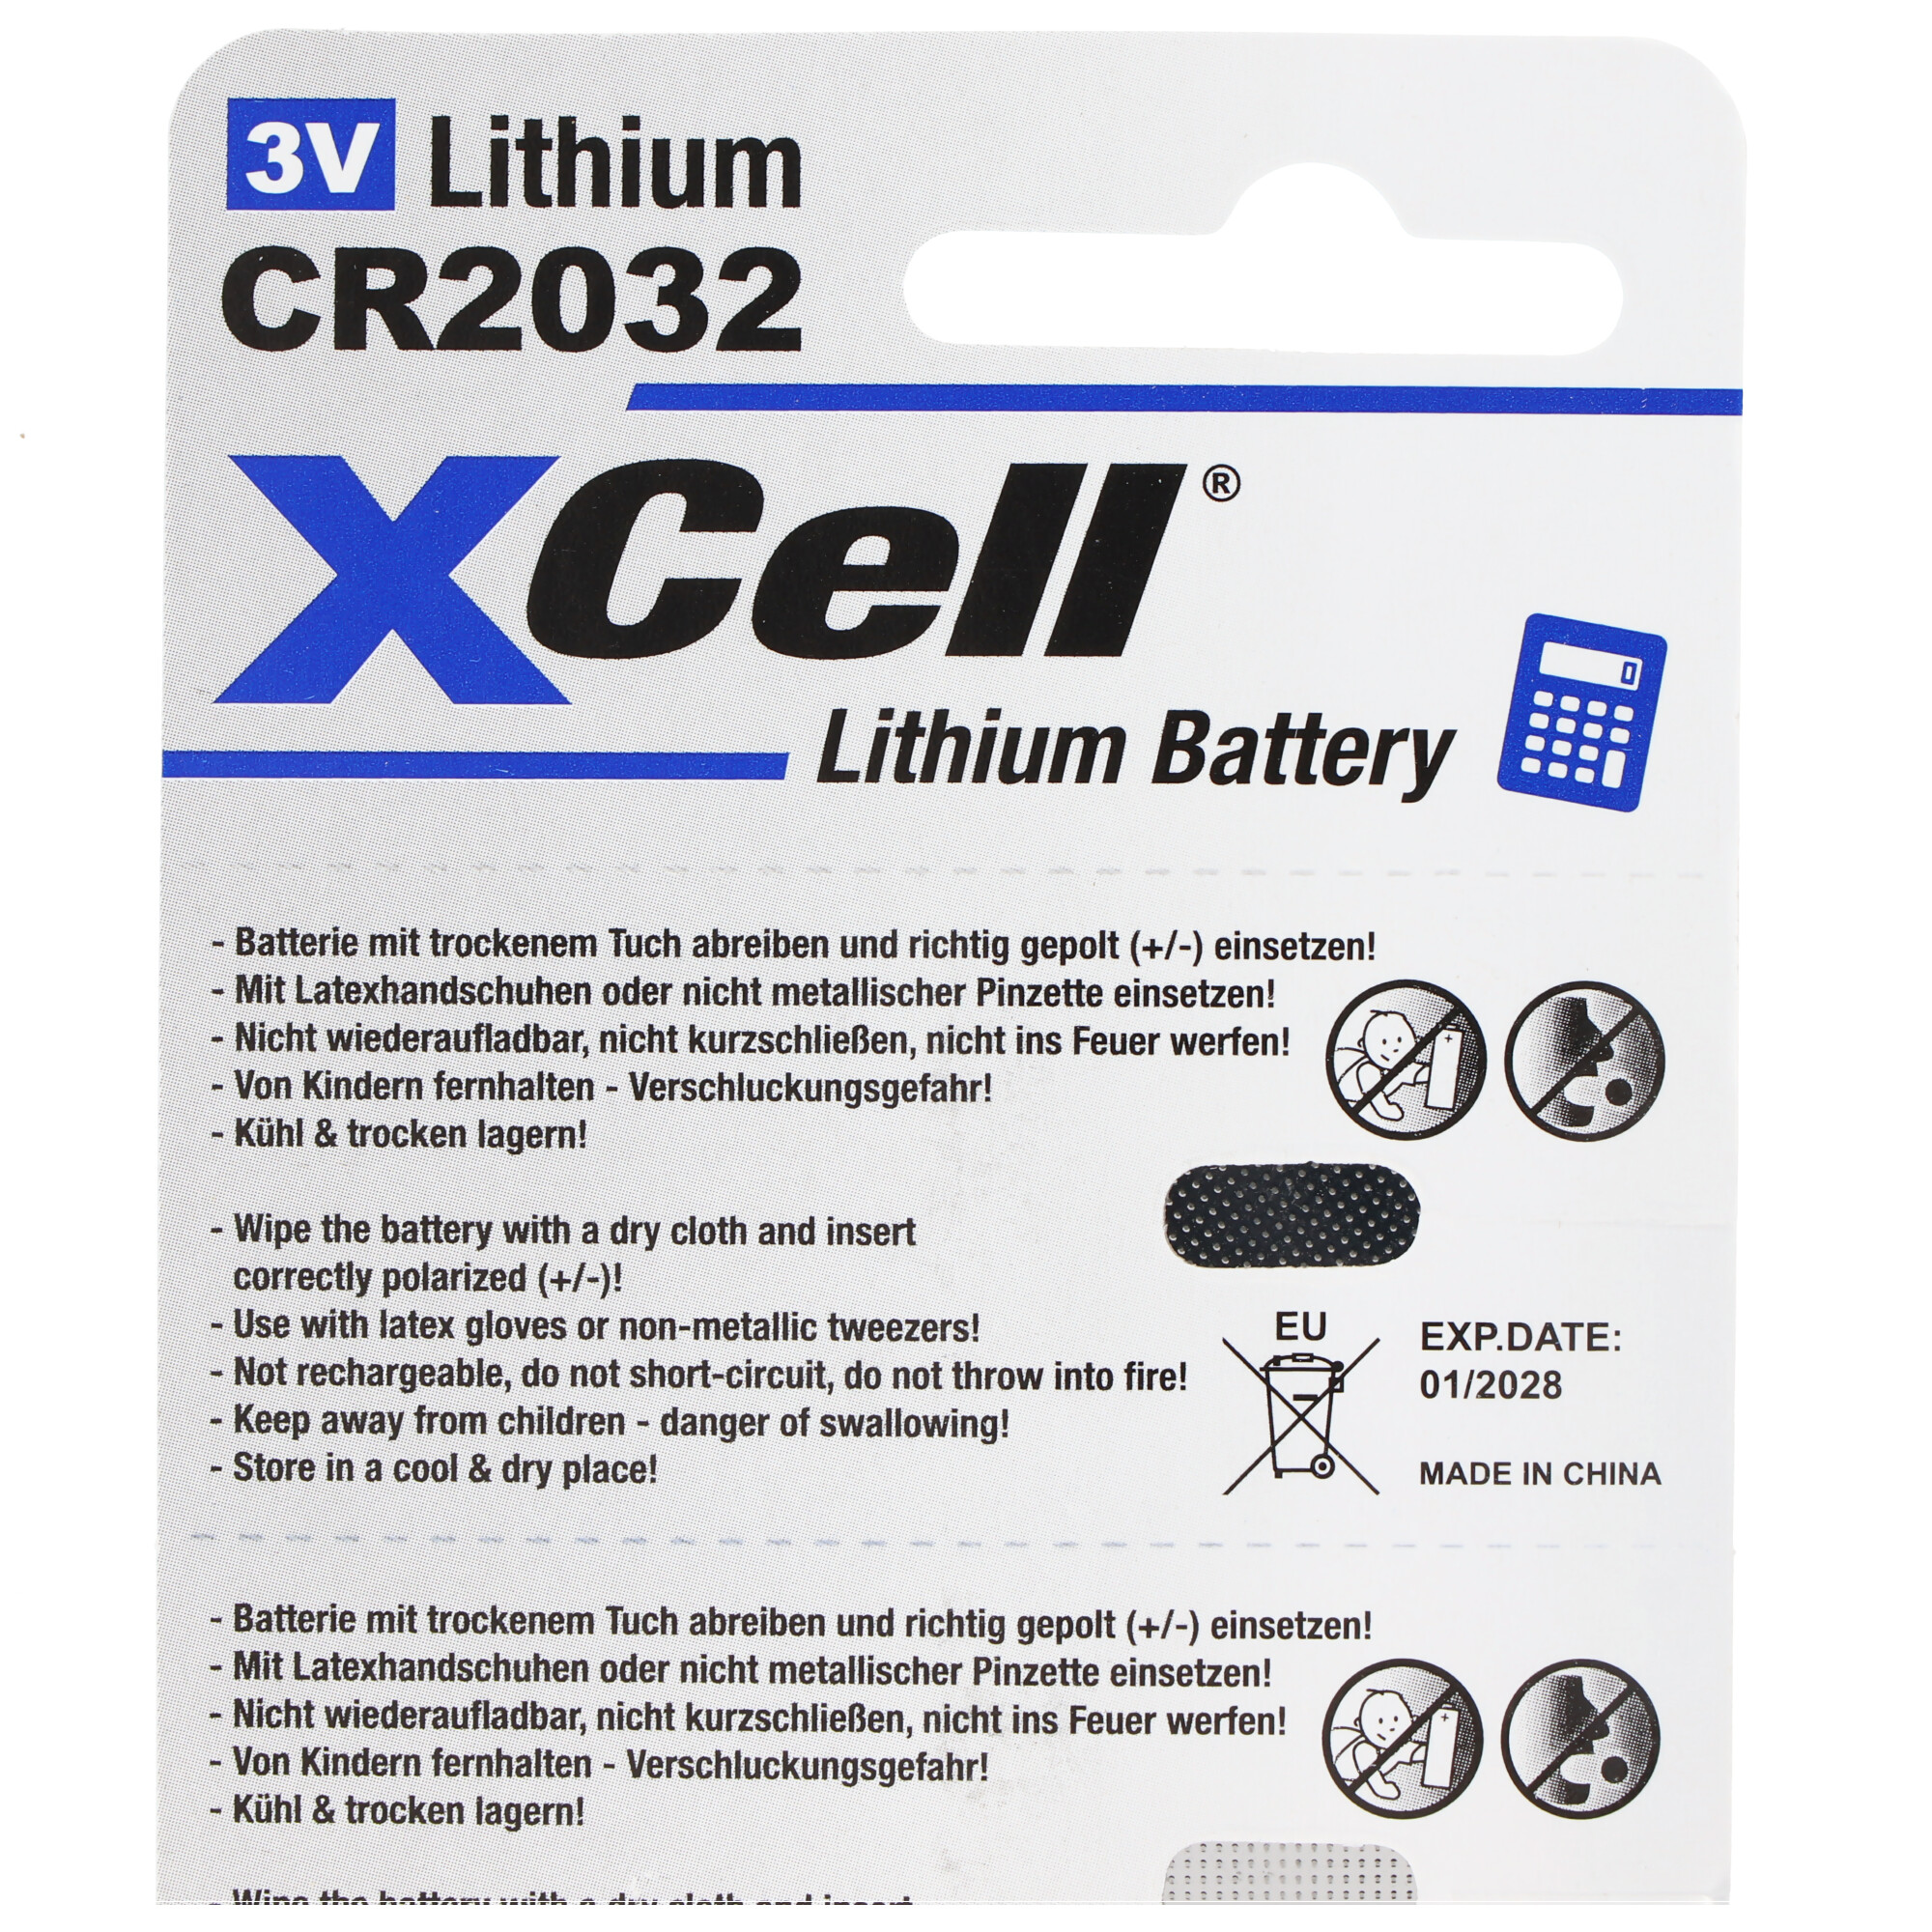 5er-Sparset CR2032 Lithium Batterie 3V, CR2032 Batterien im praktischen 5er Set